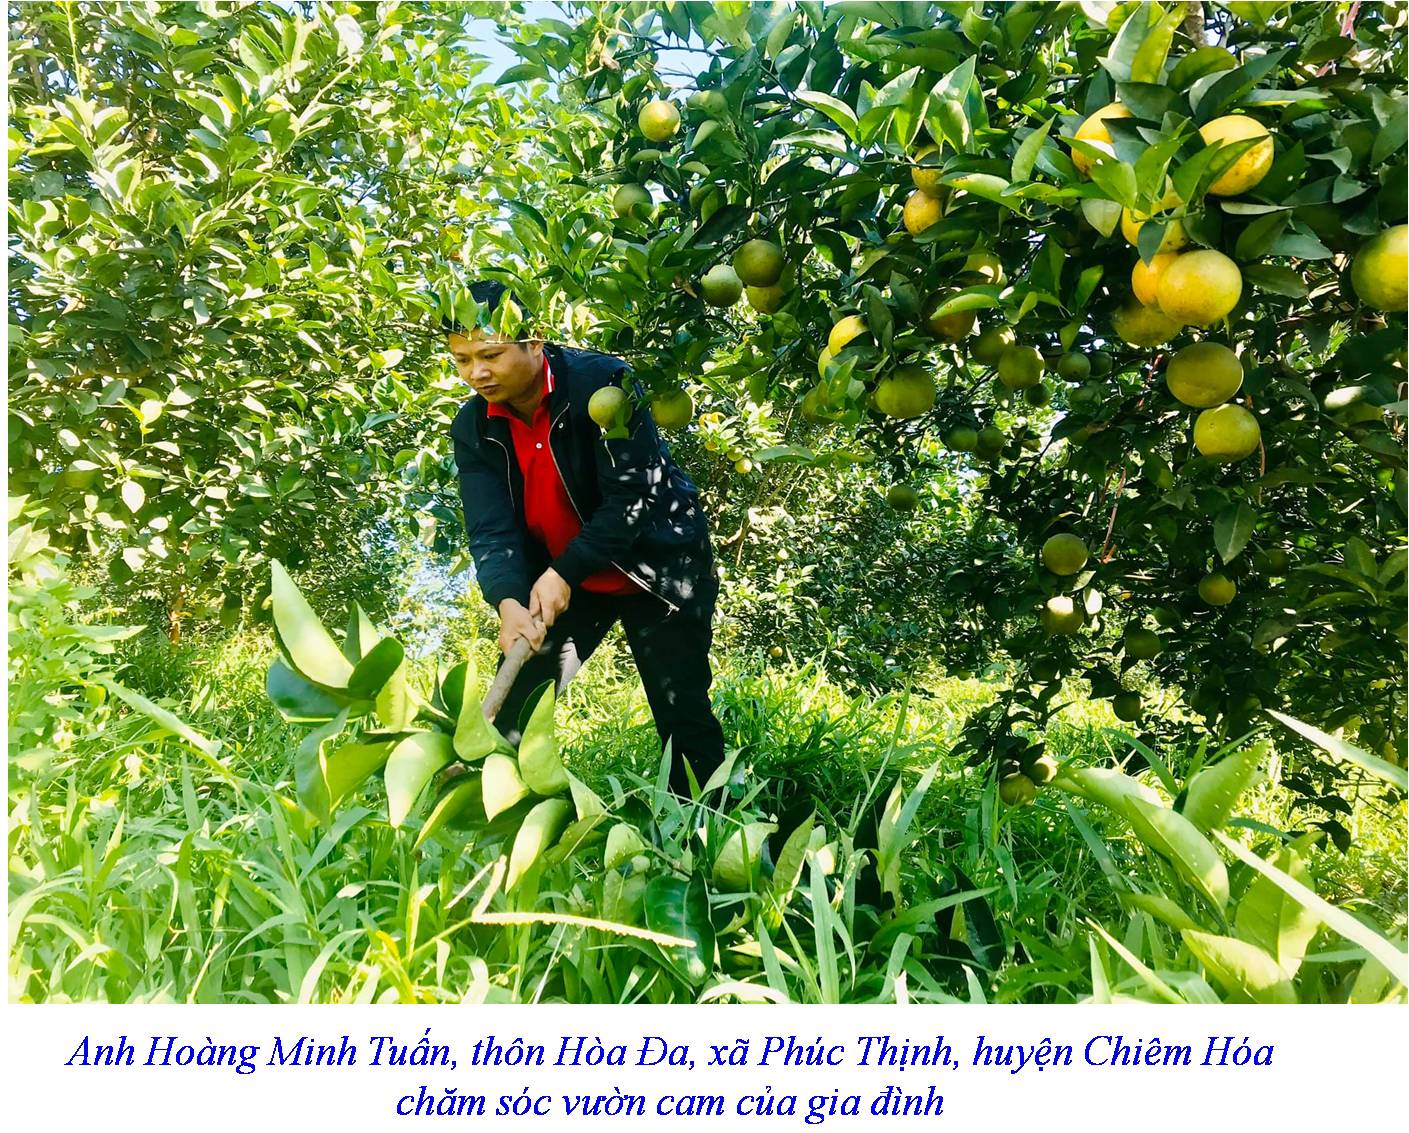 Anh Hoàng Minh Tuấn, thôn Hòa Đa, xã Phúc Thịnh, huyện Chiêm Hóa chăm sóc vườn cam của gia đình